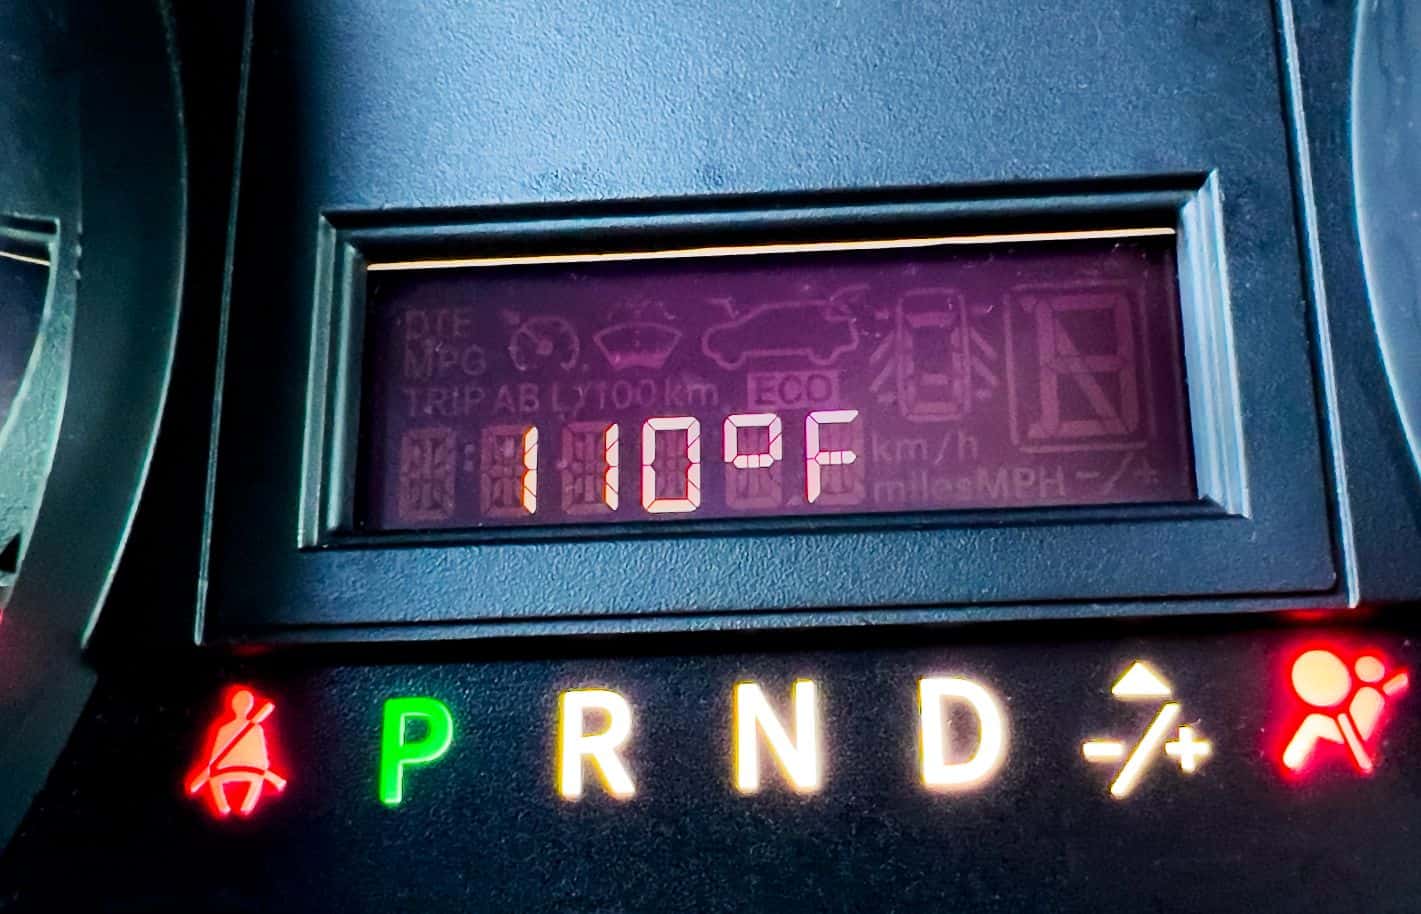 temperature gauge in car.